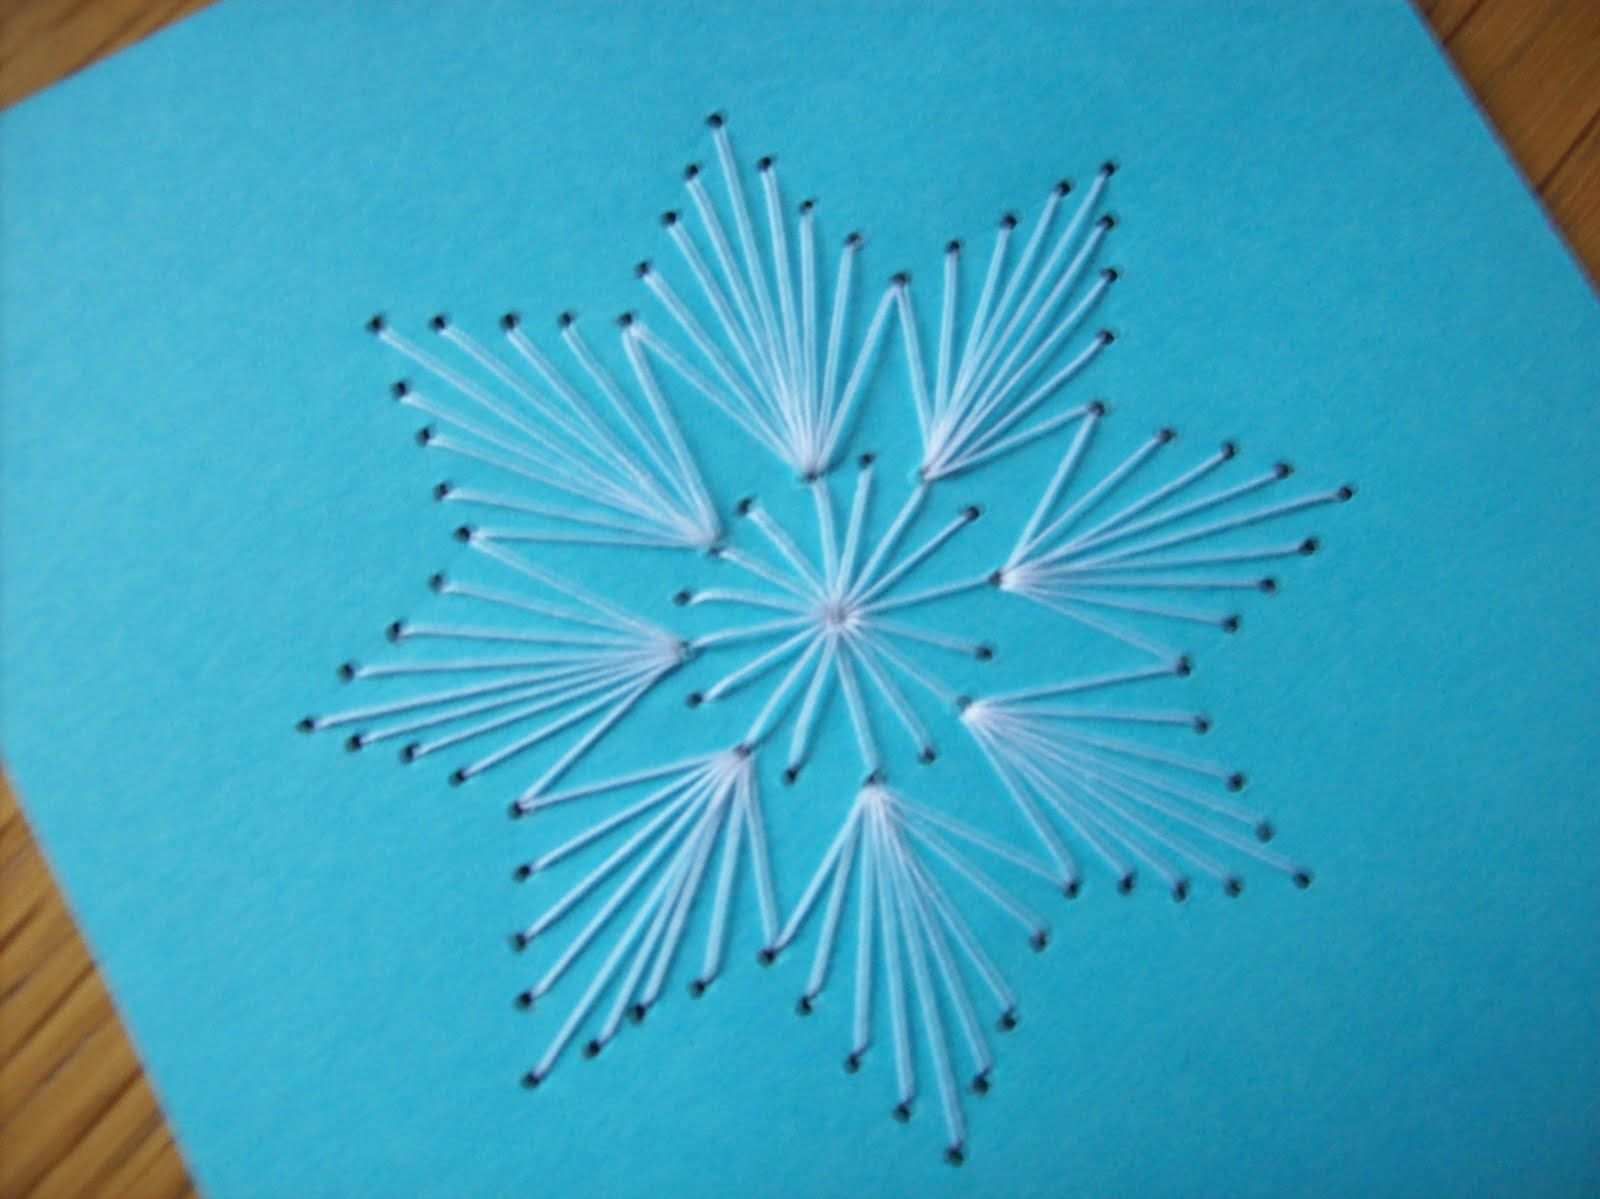 Pin Von Guadalupe Estrada Auf Fadengrafik Fadengrafik Weihnachten Papierstickerei Fadengrafik